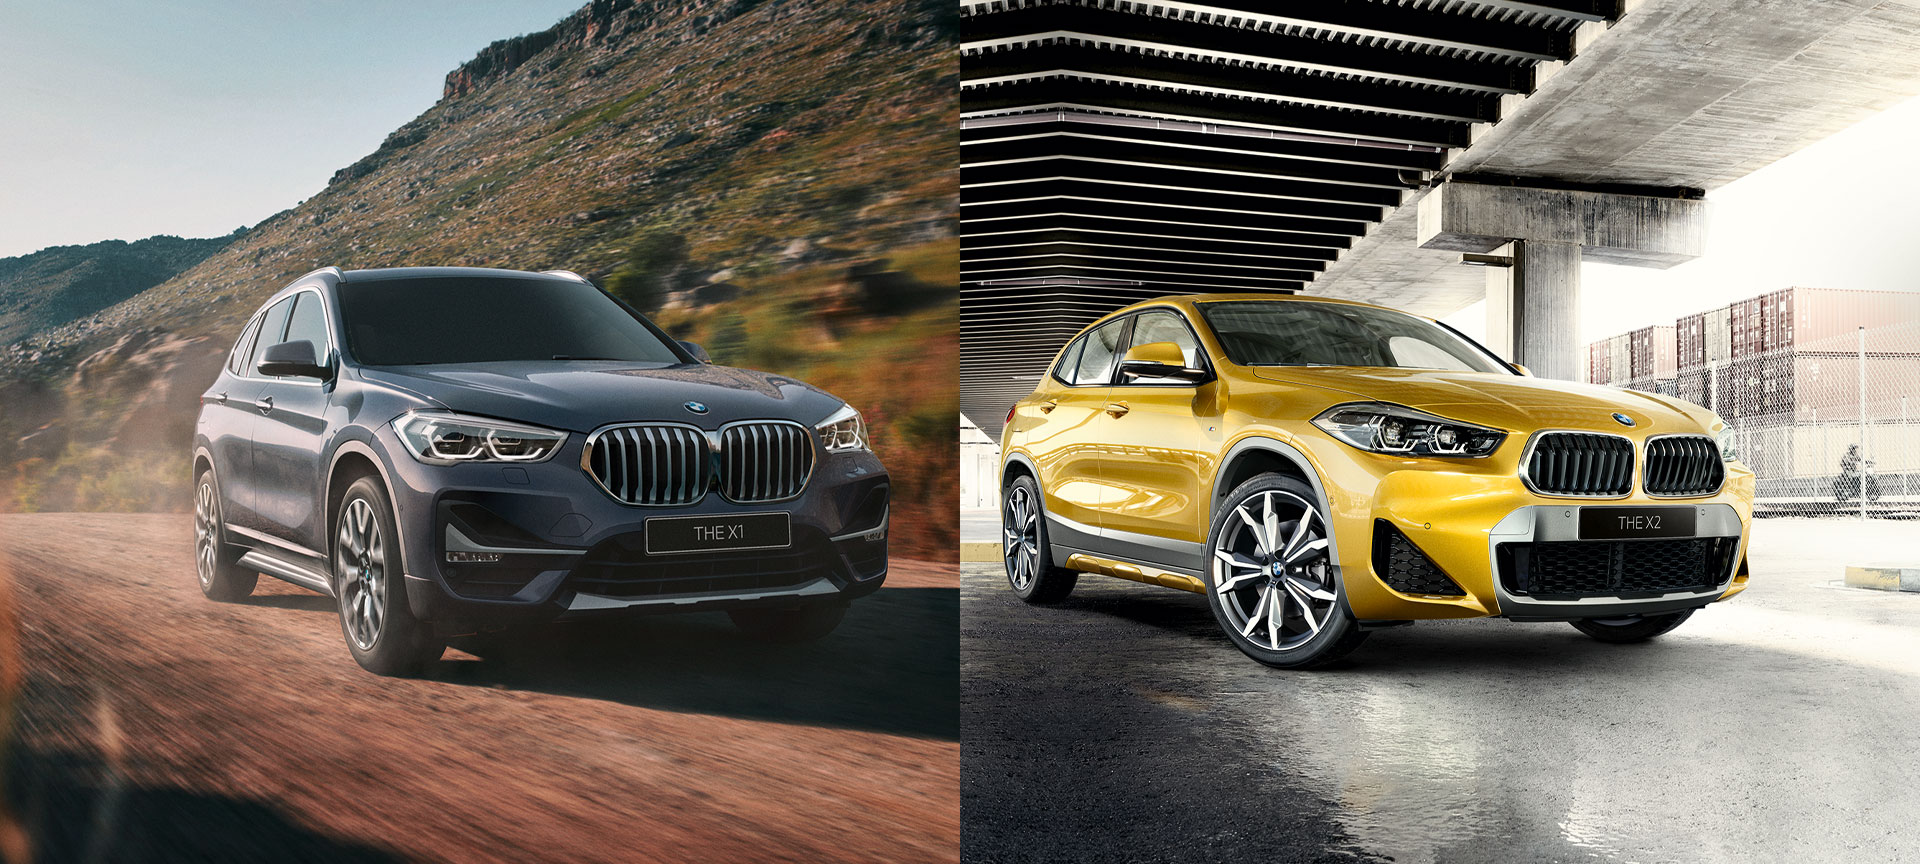 BMW X1とX2の新車が即納車可能